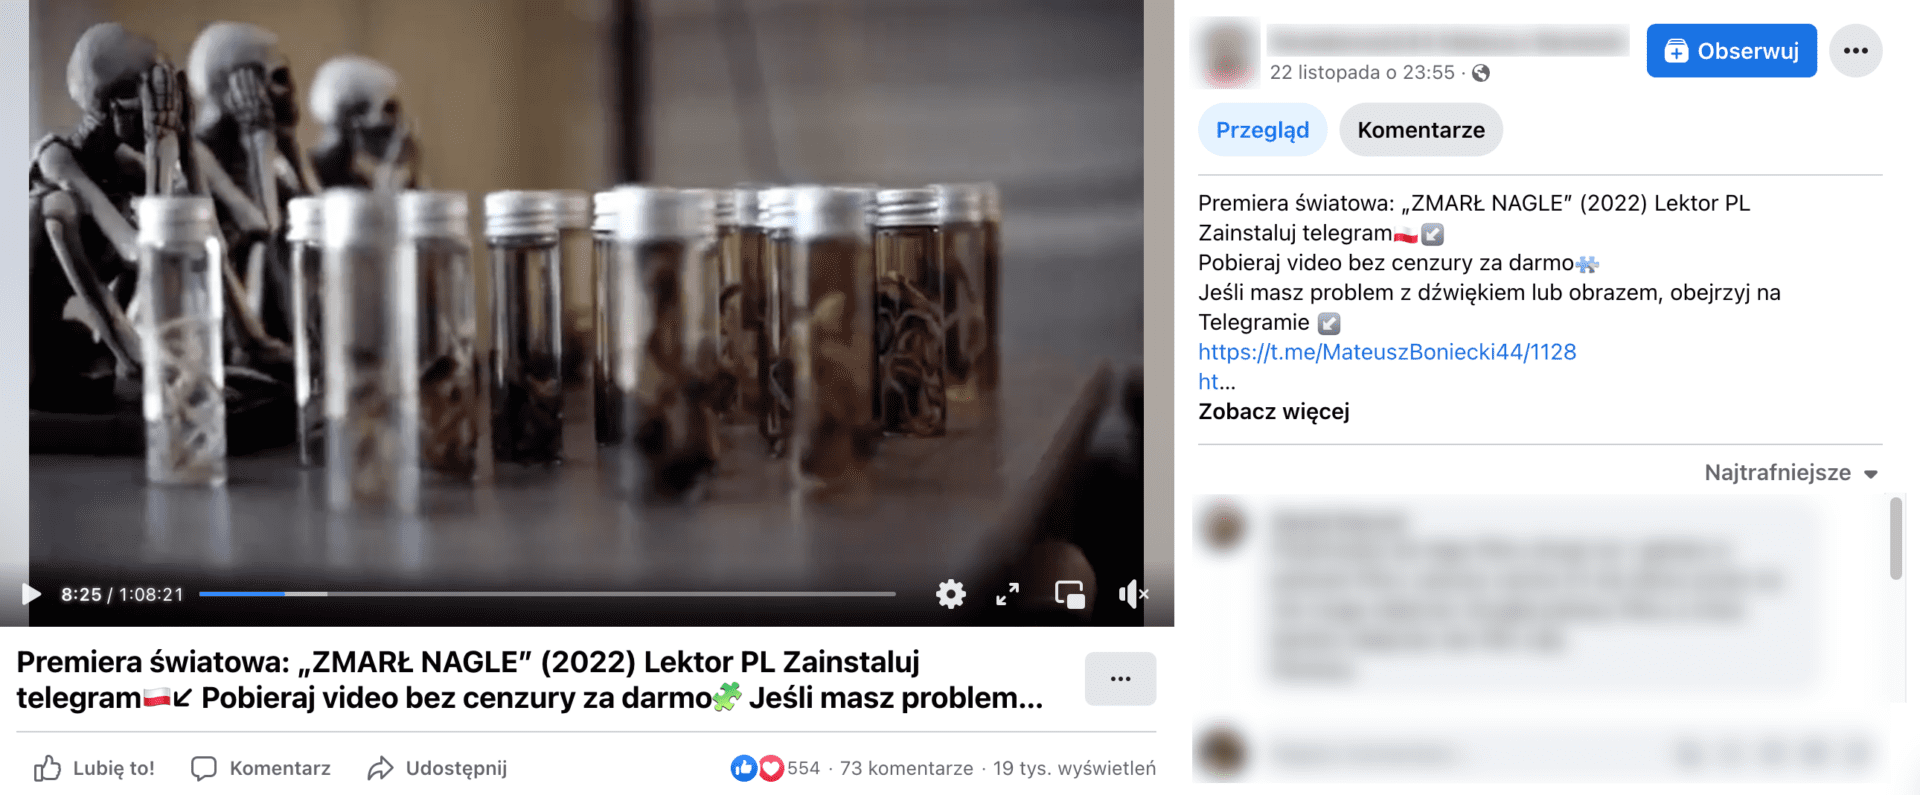 Zrzut ekranu posta na Facebooku, w którym zamieszczono opisywane nagranie. Widoczne są probówki z ciemnymi substancjami, w tle widać kościotrupy trzymające się za głowy. Ten konkretny wpis zdobył ponad 550 reakcji, ponad 70 komentarzy i ponad 19 tys. wyświetleń.